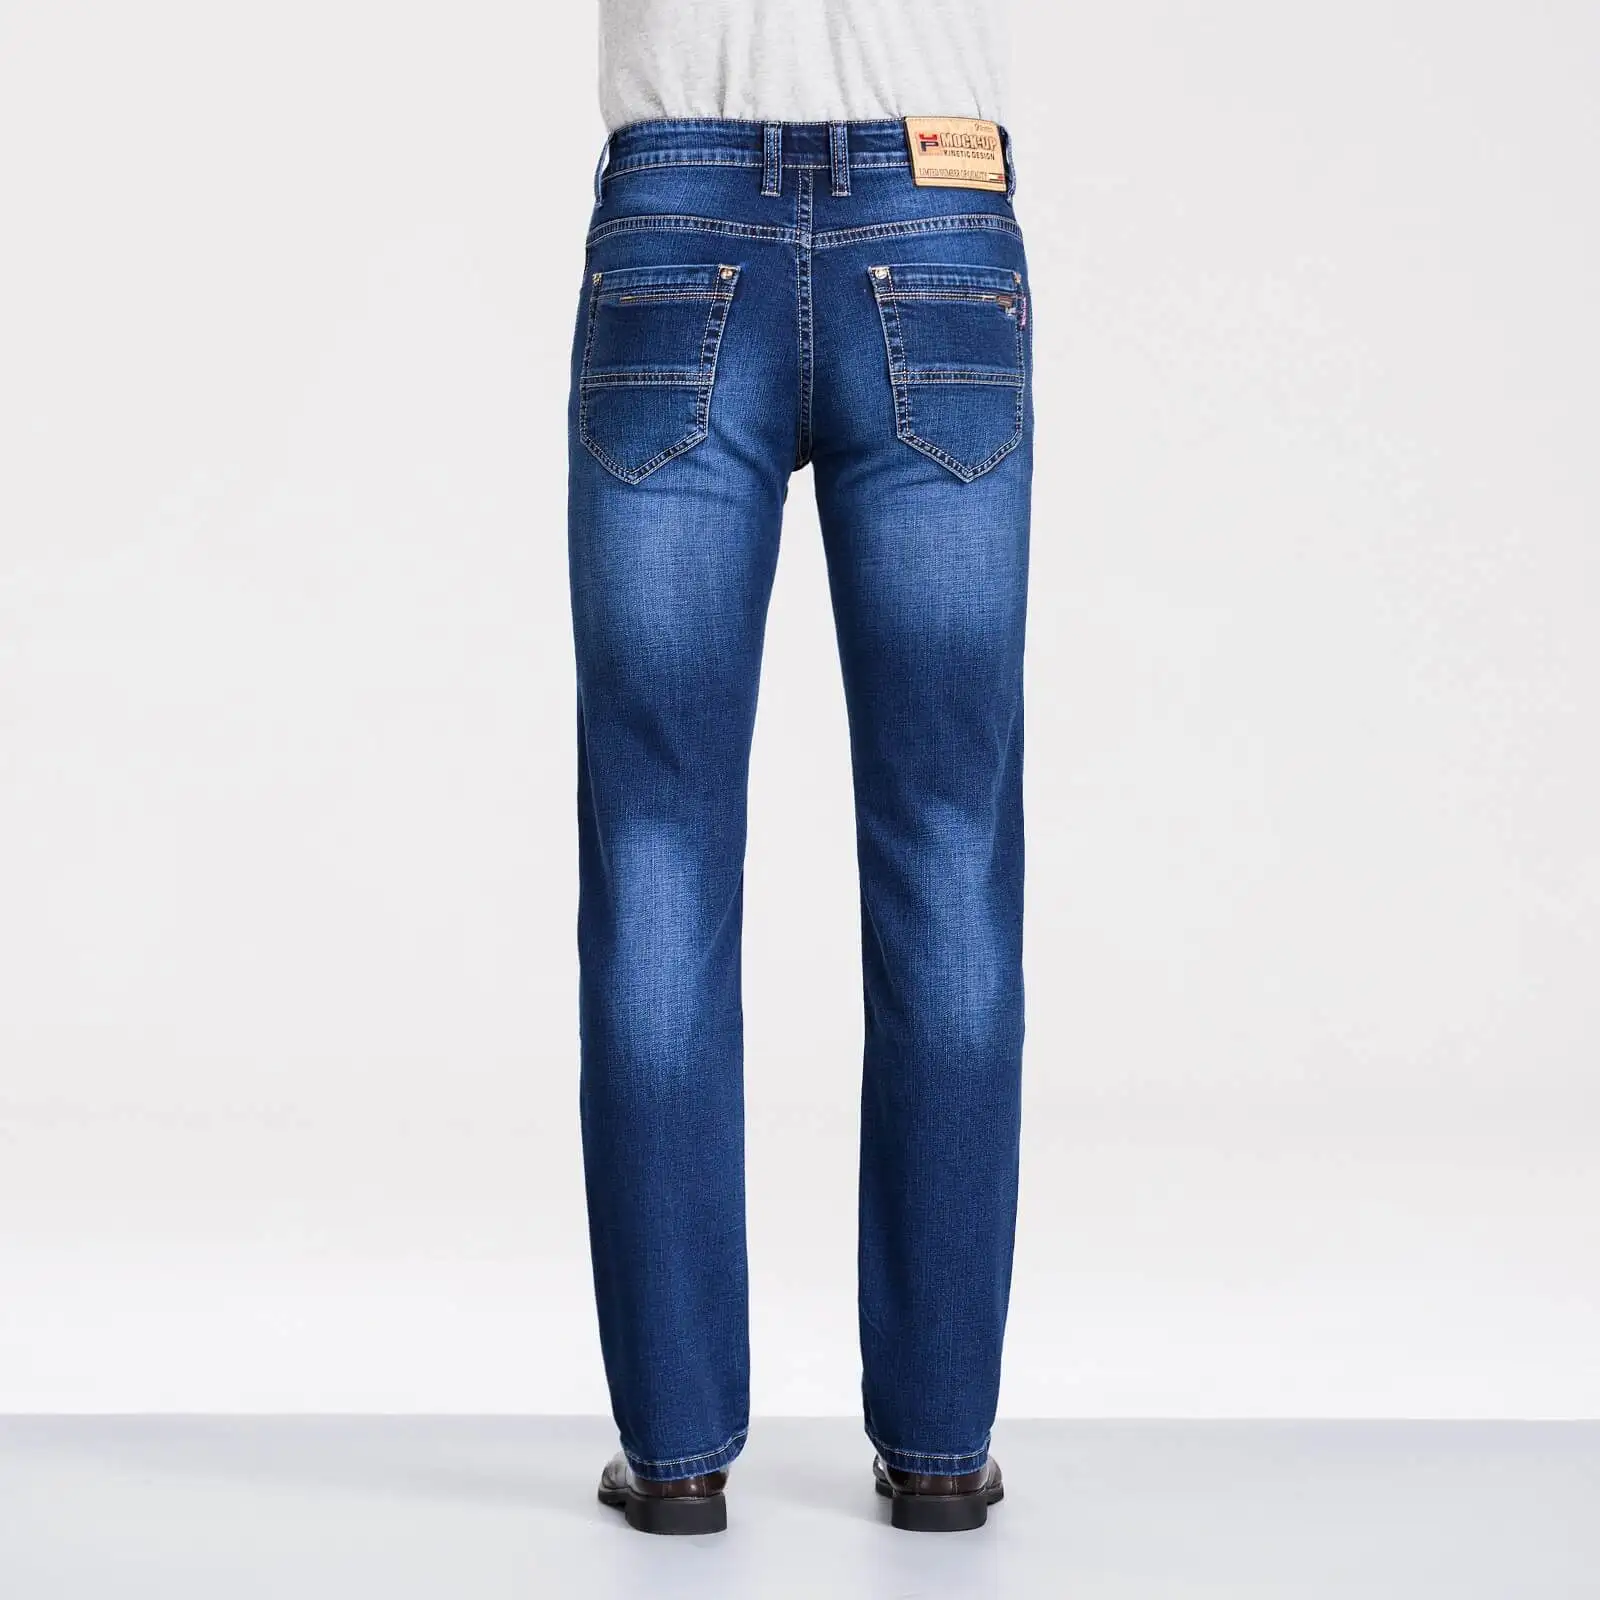 Макет бренд MPZ809 джинсы мужские повседневные джинсы облегающие брюки высокое качество deskared2 джинсы мода 38 40 размер